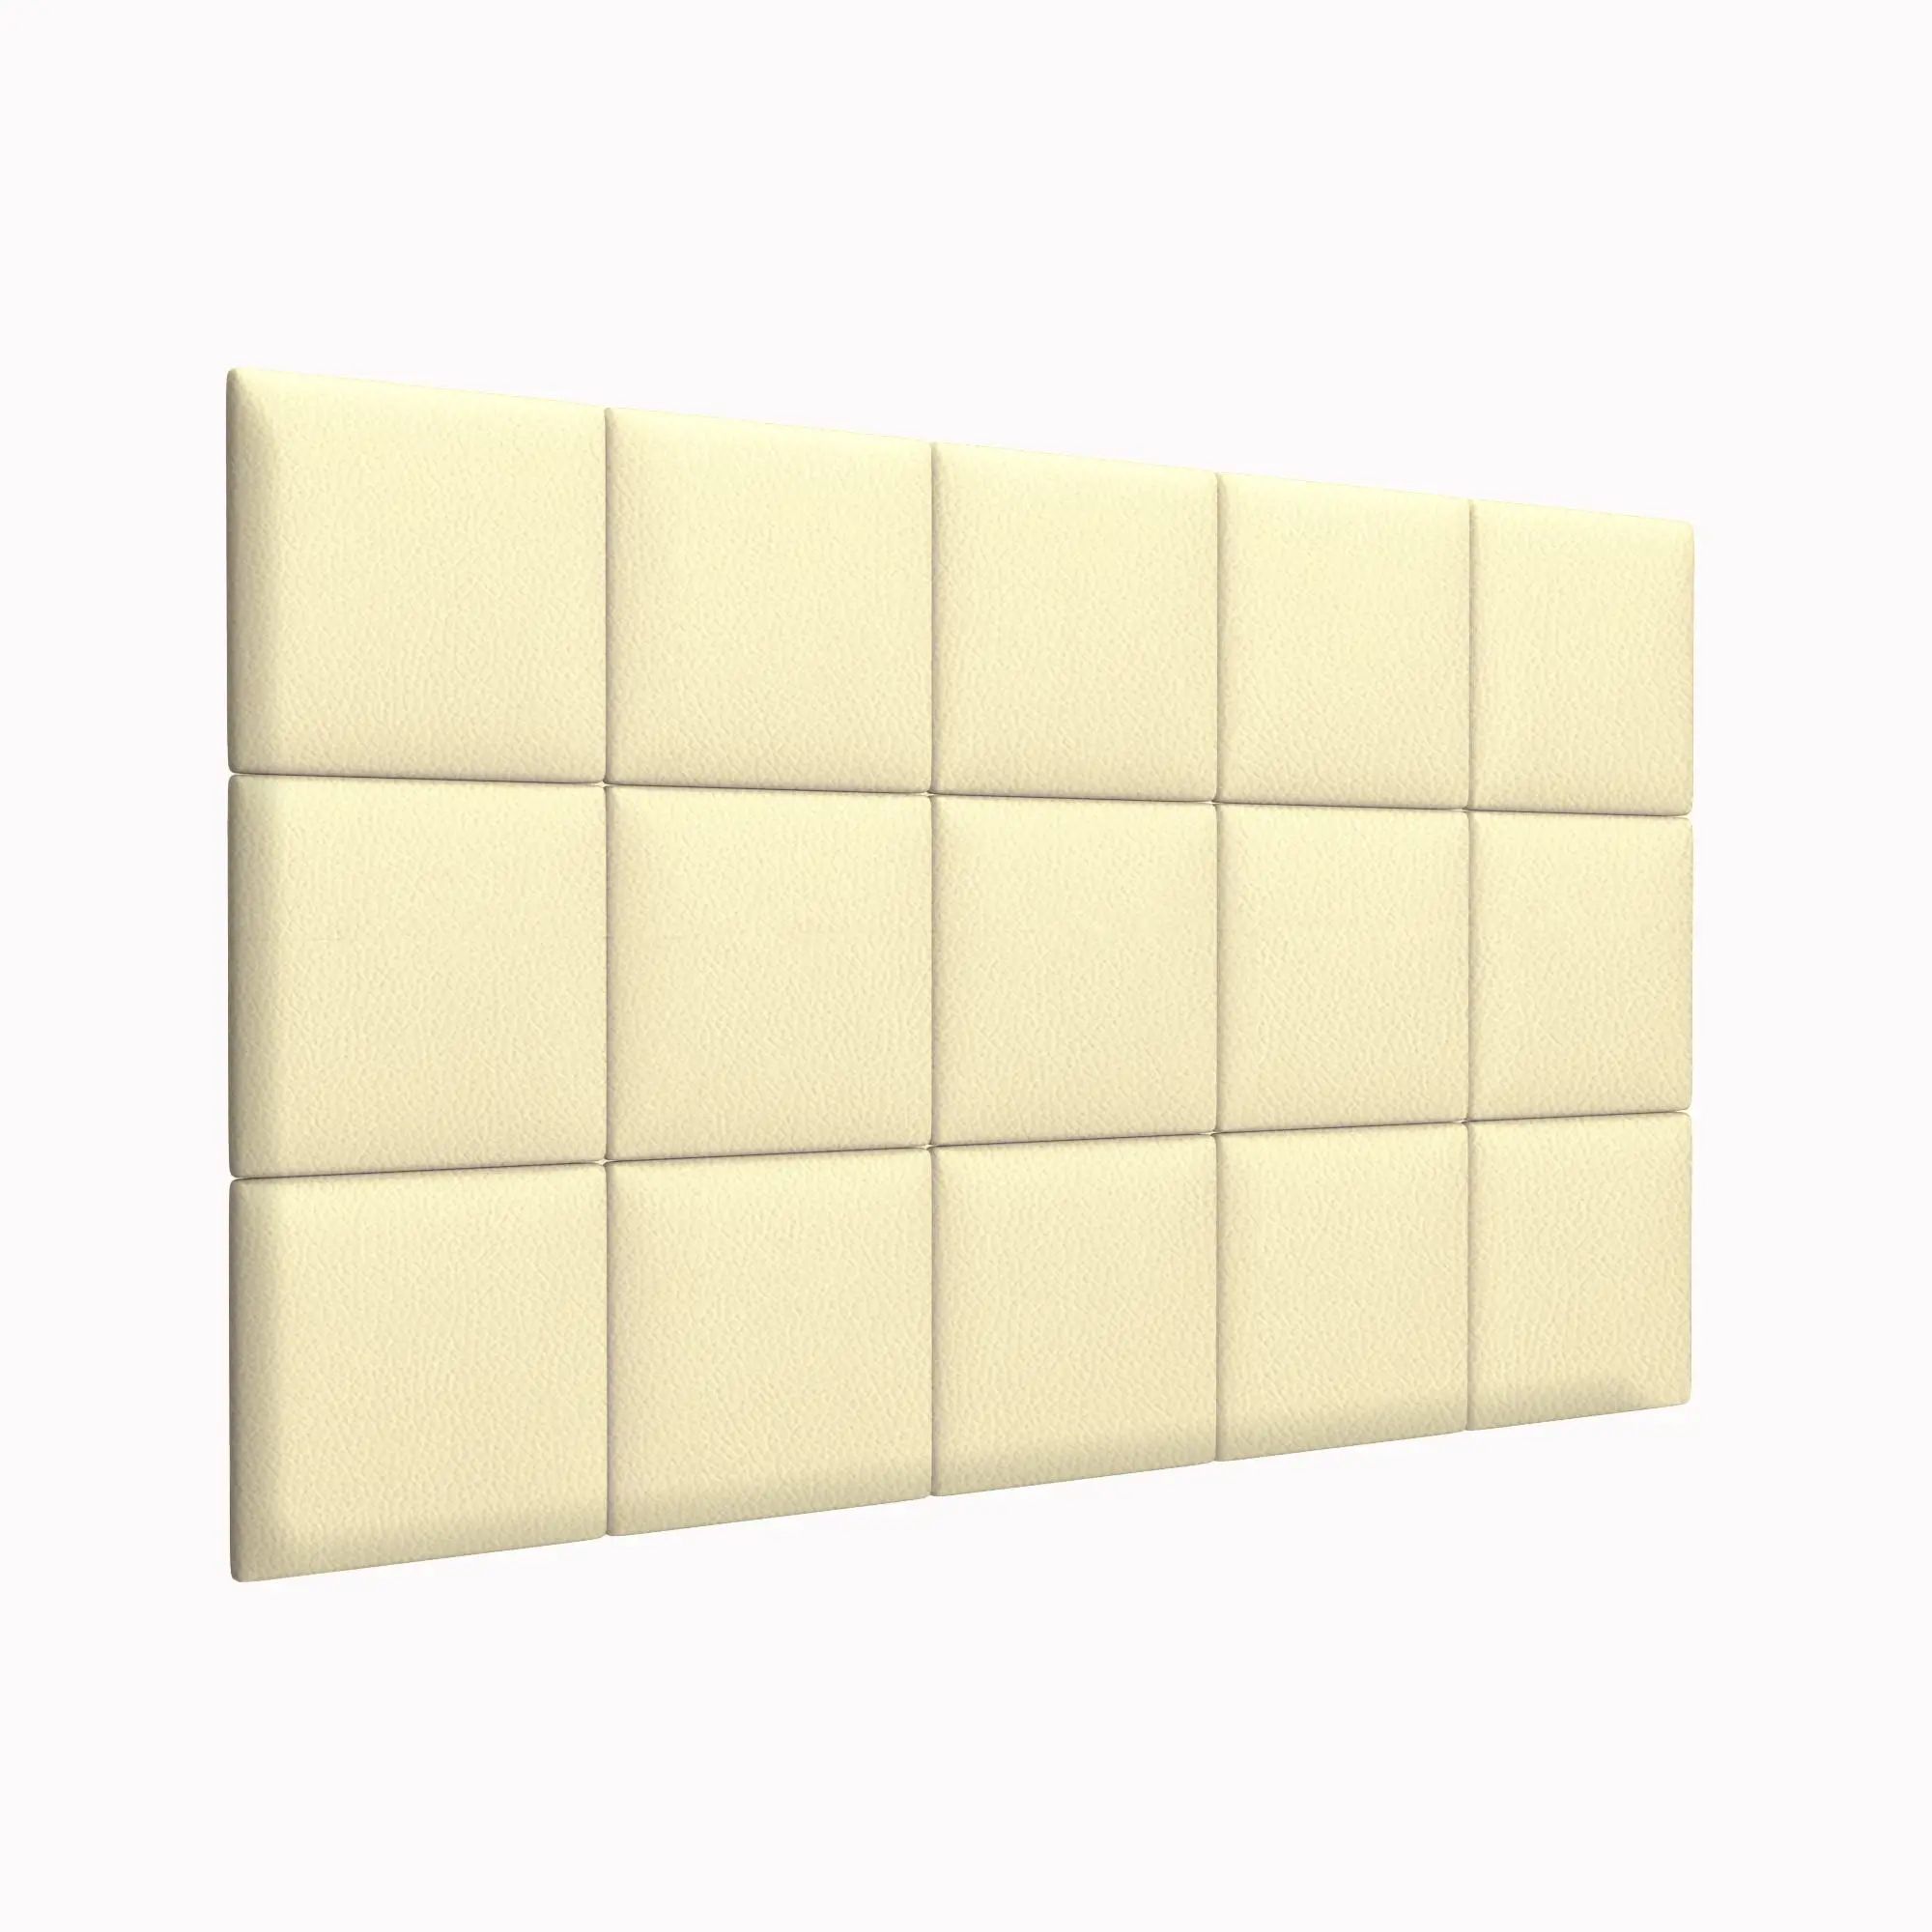 Стеновая панель Eco Leather Vanilla 30х30 см 2 шт.